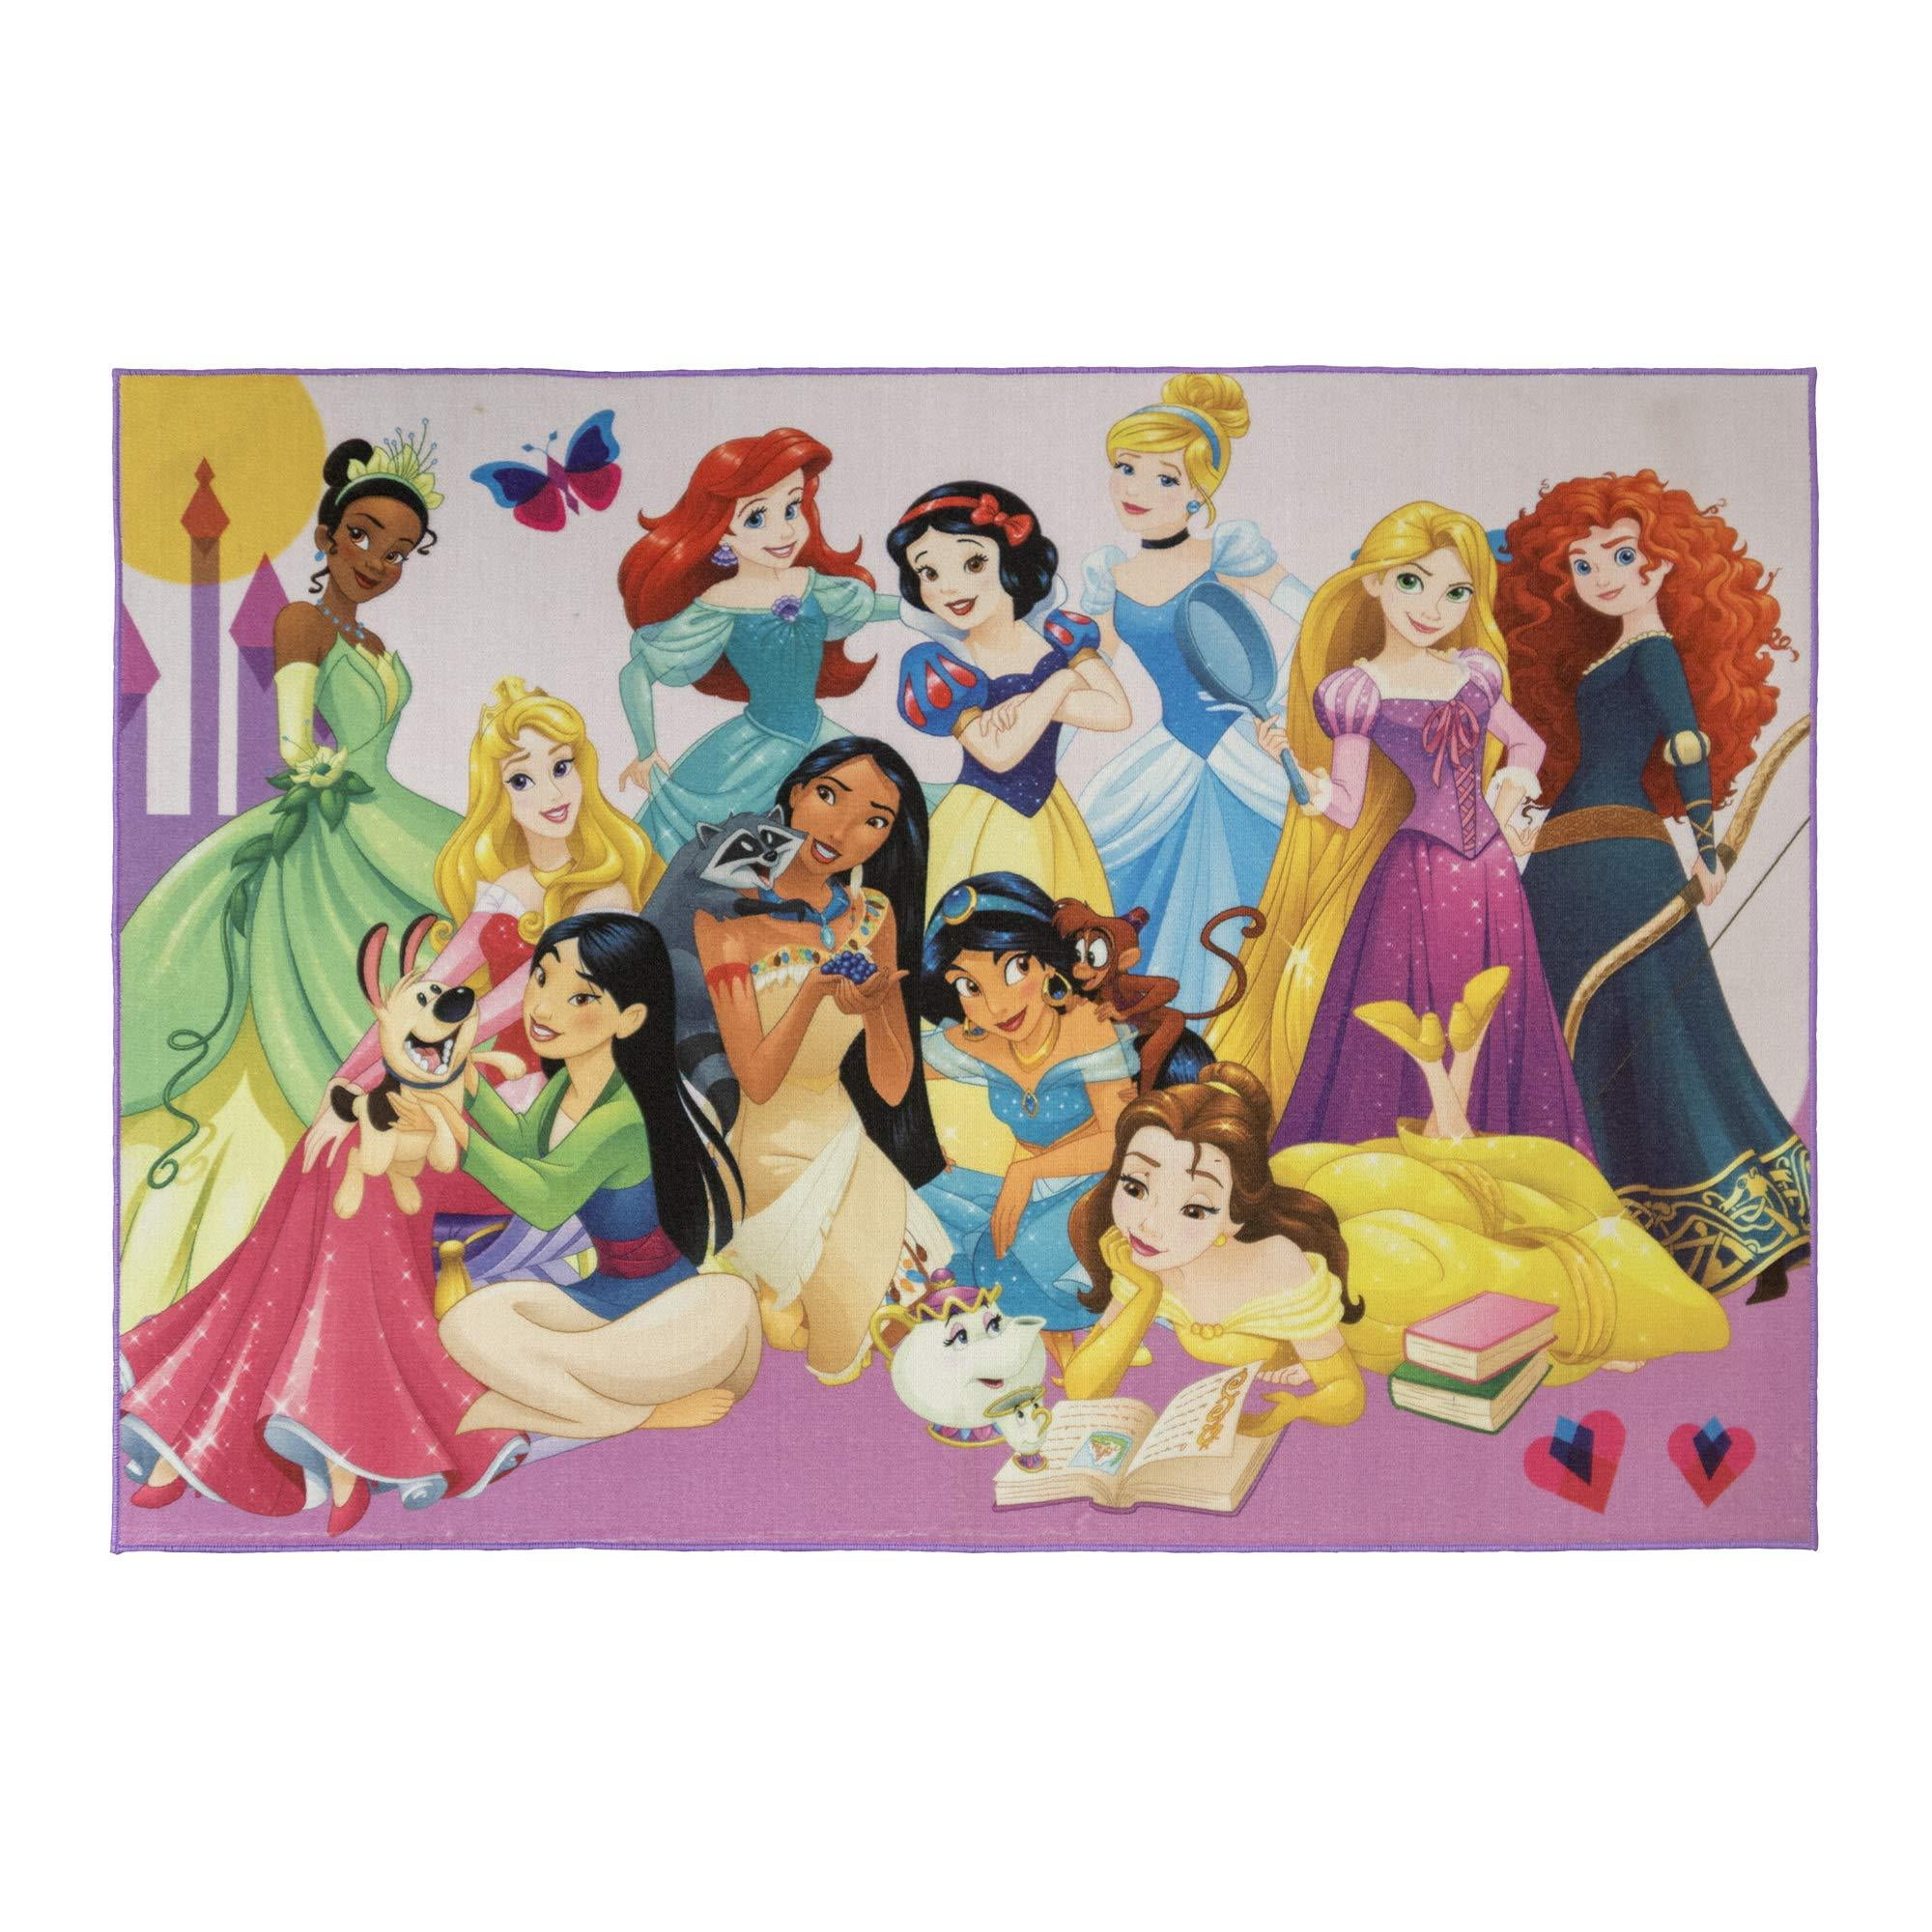 Gertmenian Disney Princess Rug Kids Party Carpet, 5x7